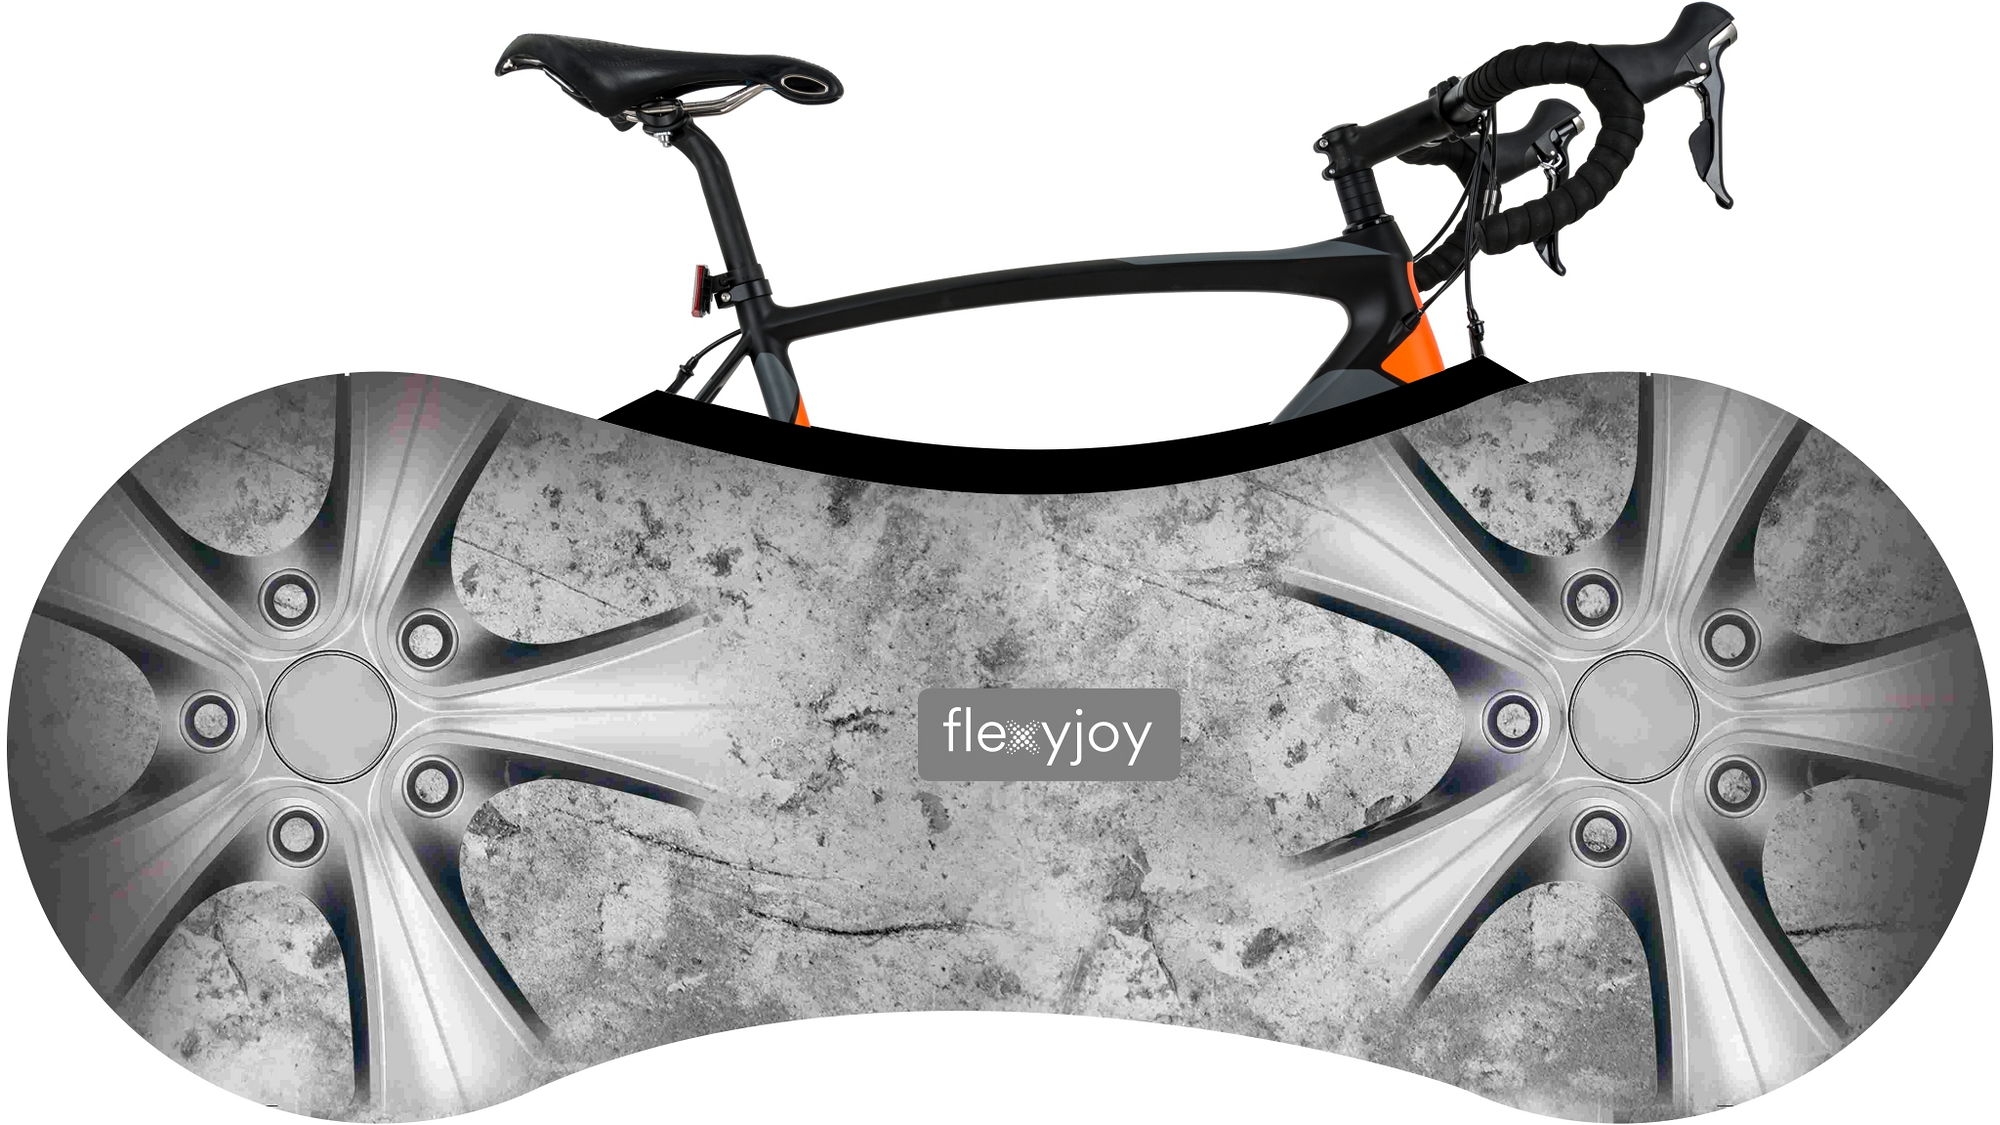 Zdjęcia - Torba rowerowa Flexyjoy Elastyczny, uniwersalny pokrowiec rowerowy z systemem łatwego zak